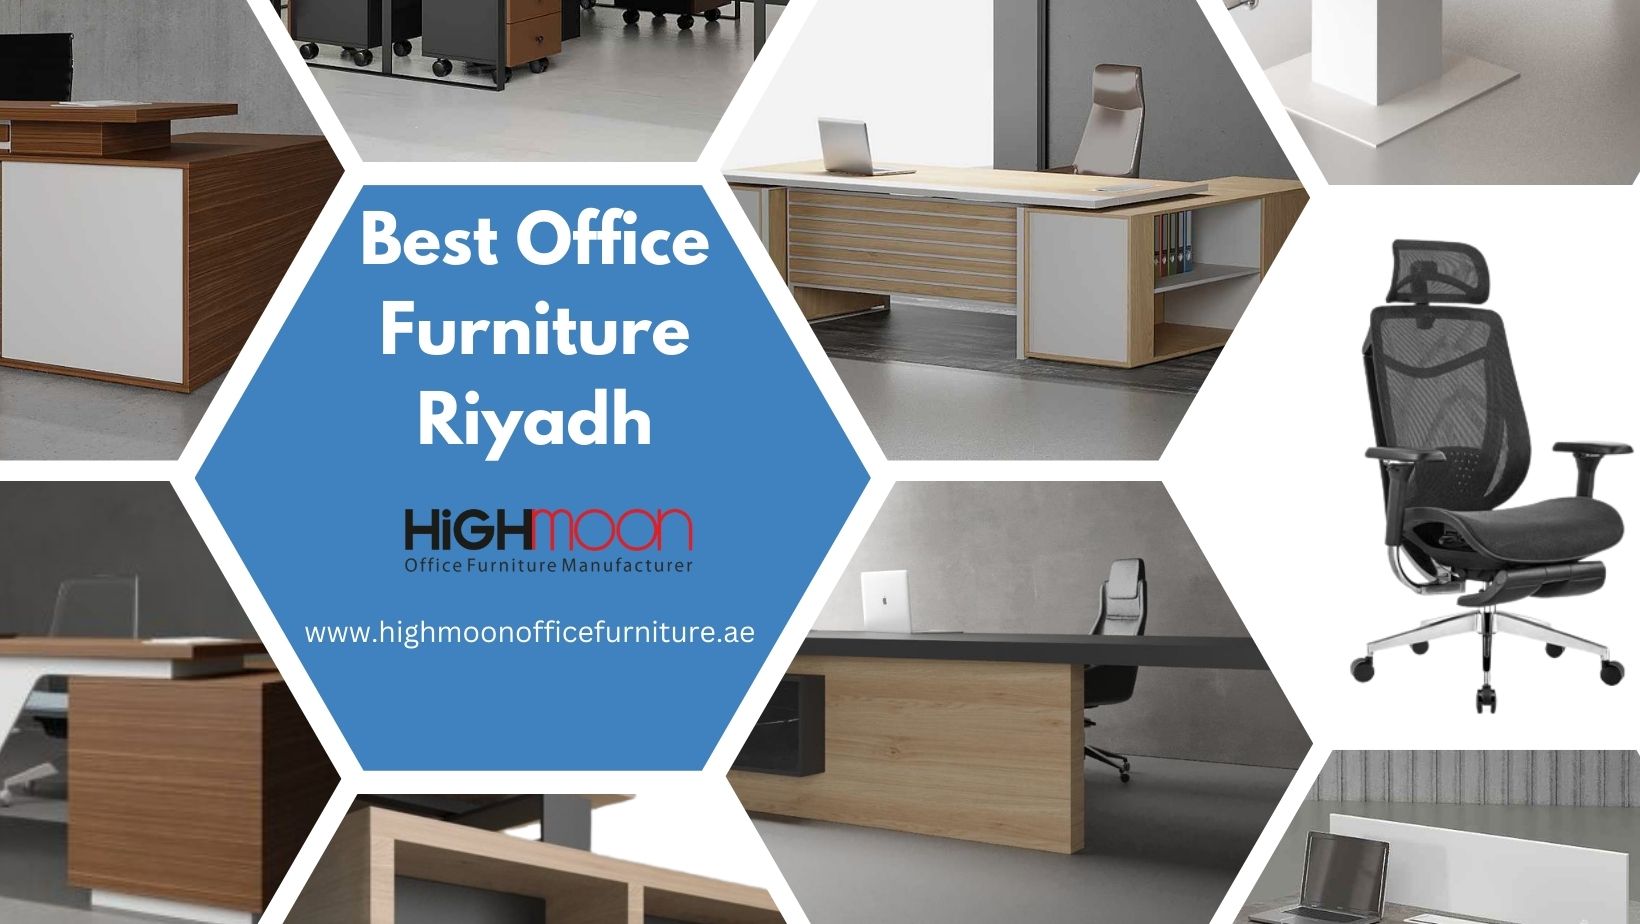 Best Office Furniture Riyadh